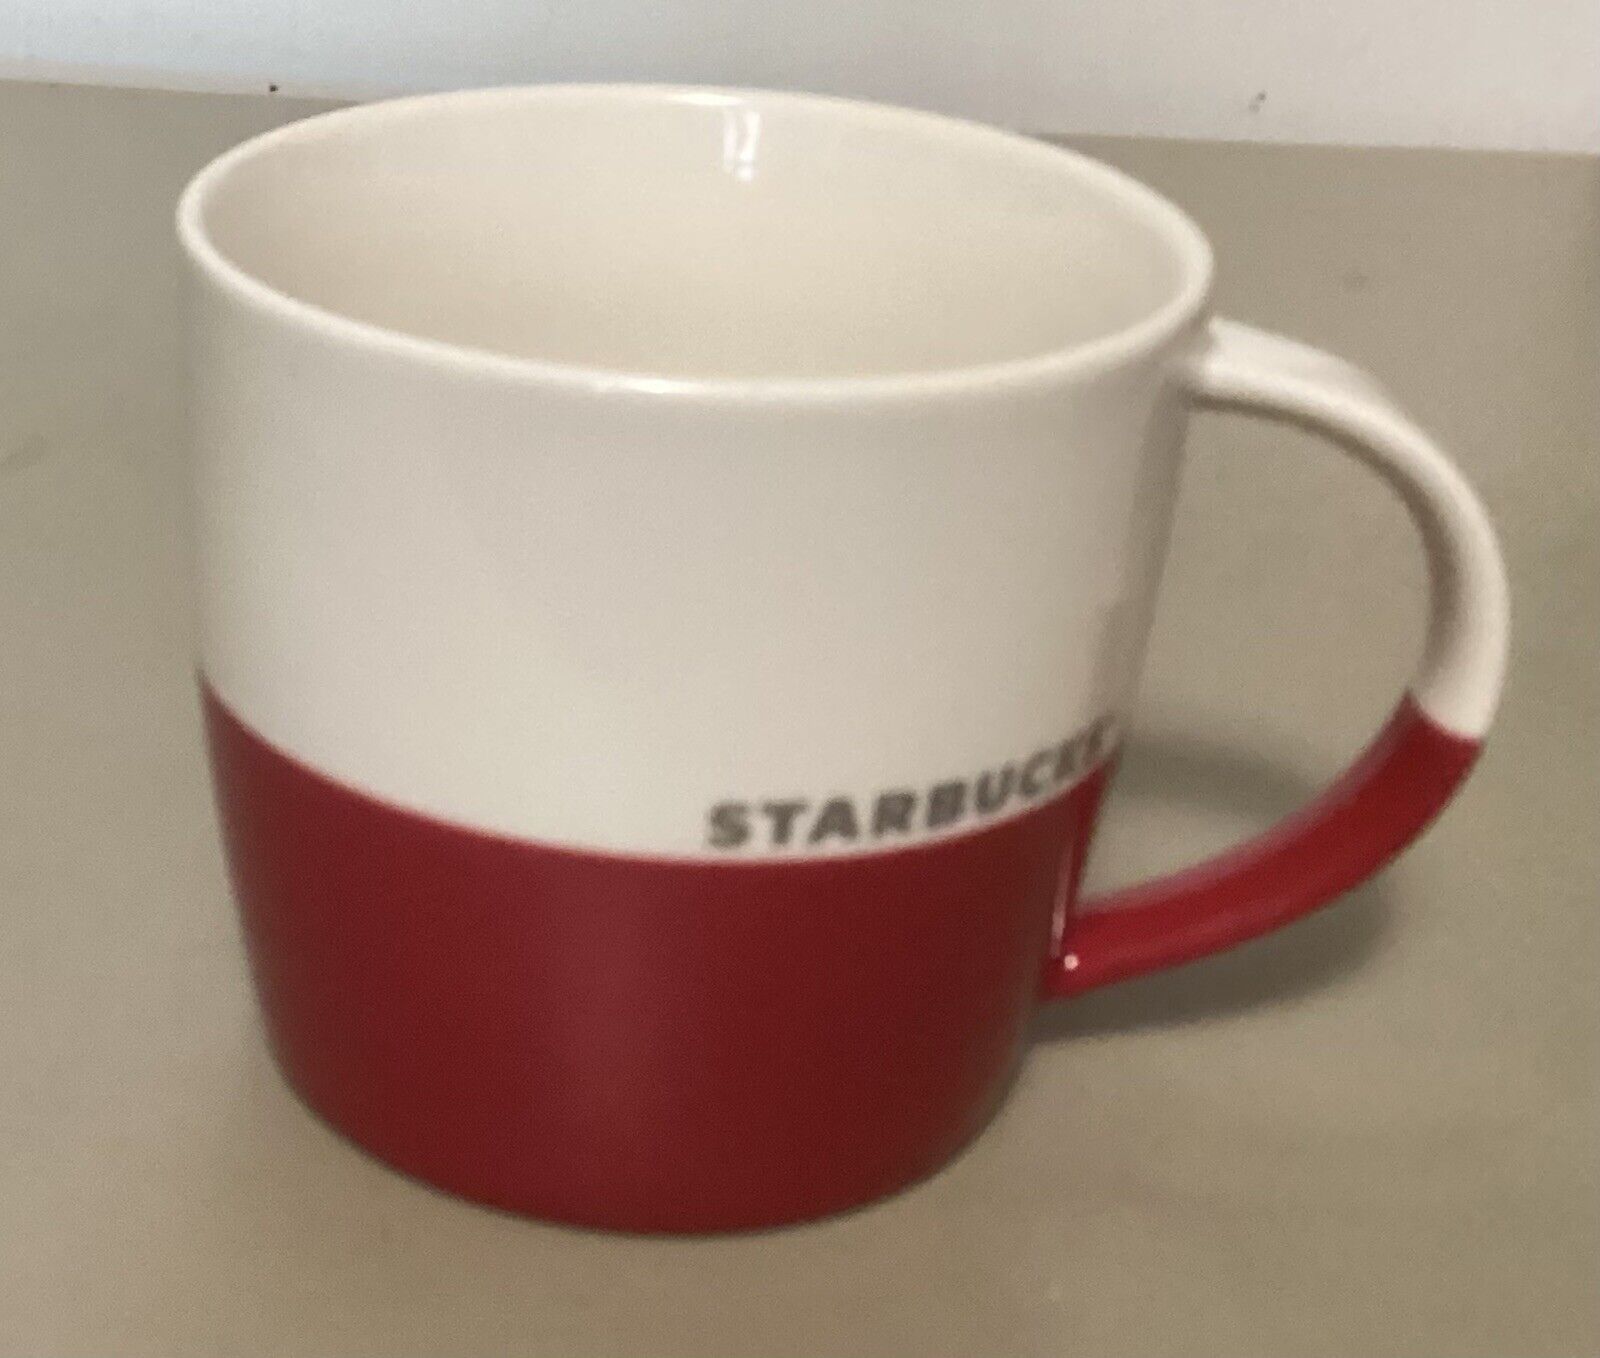 Starbucks Red And White New Bone China Coffee Mug